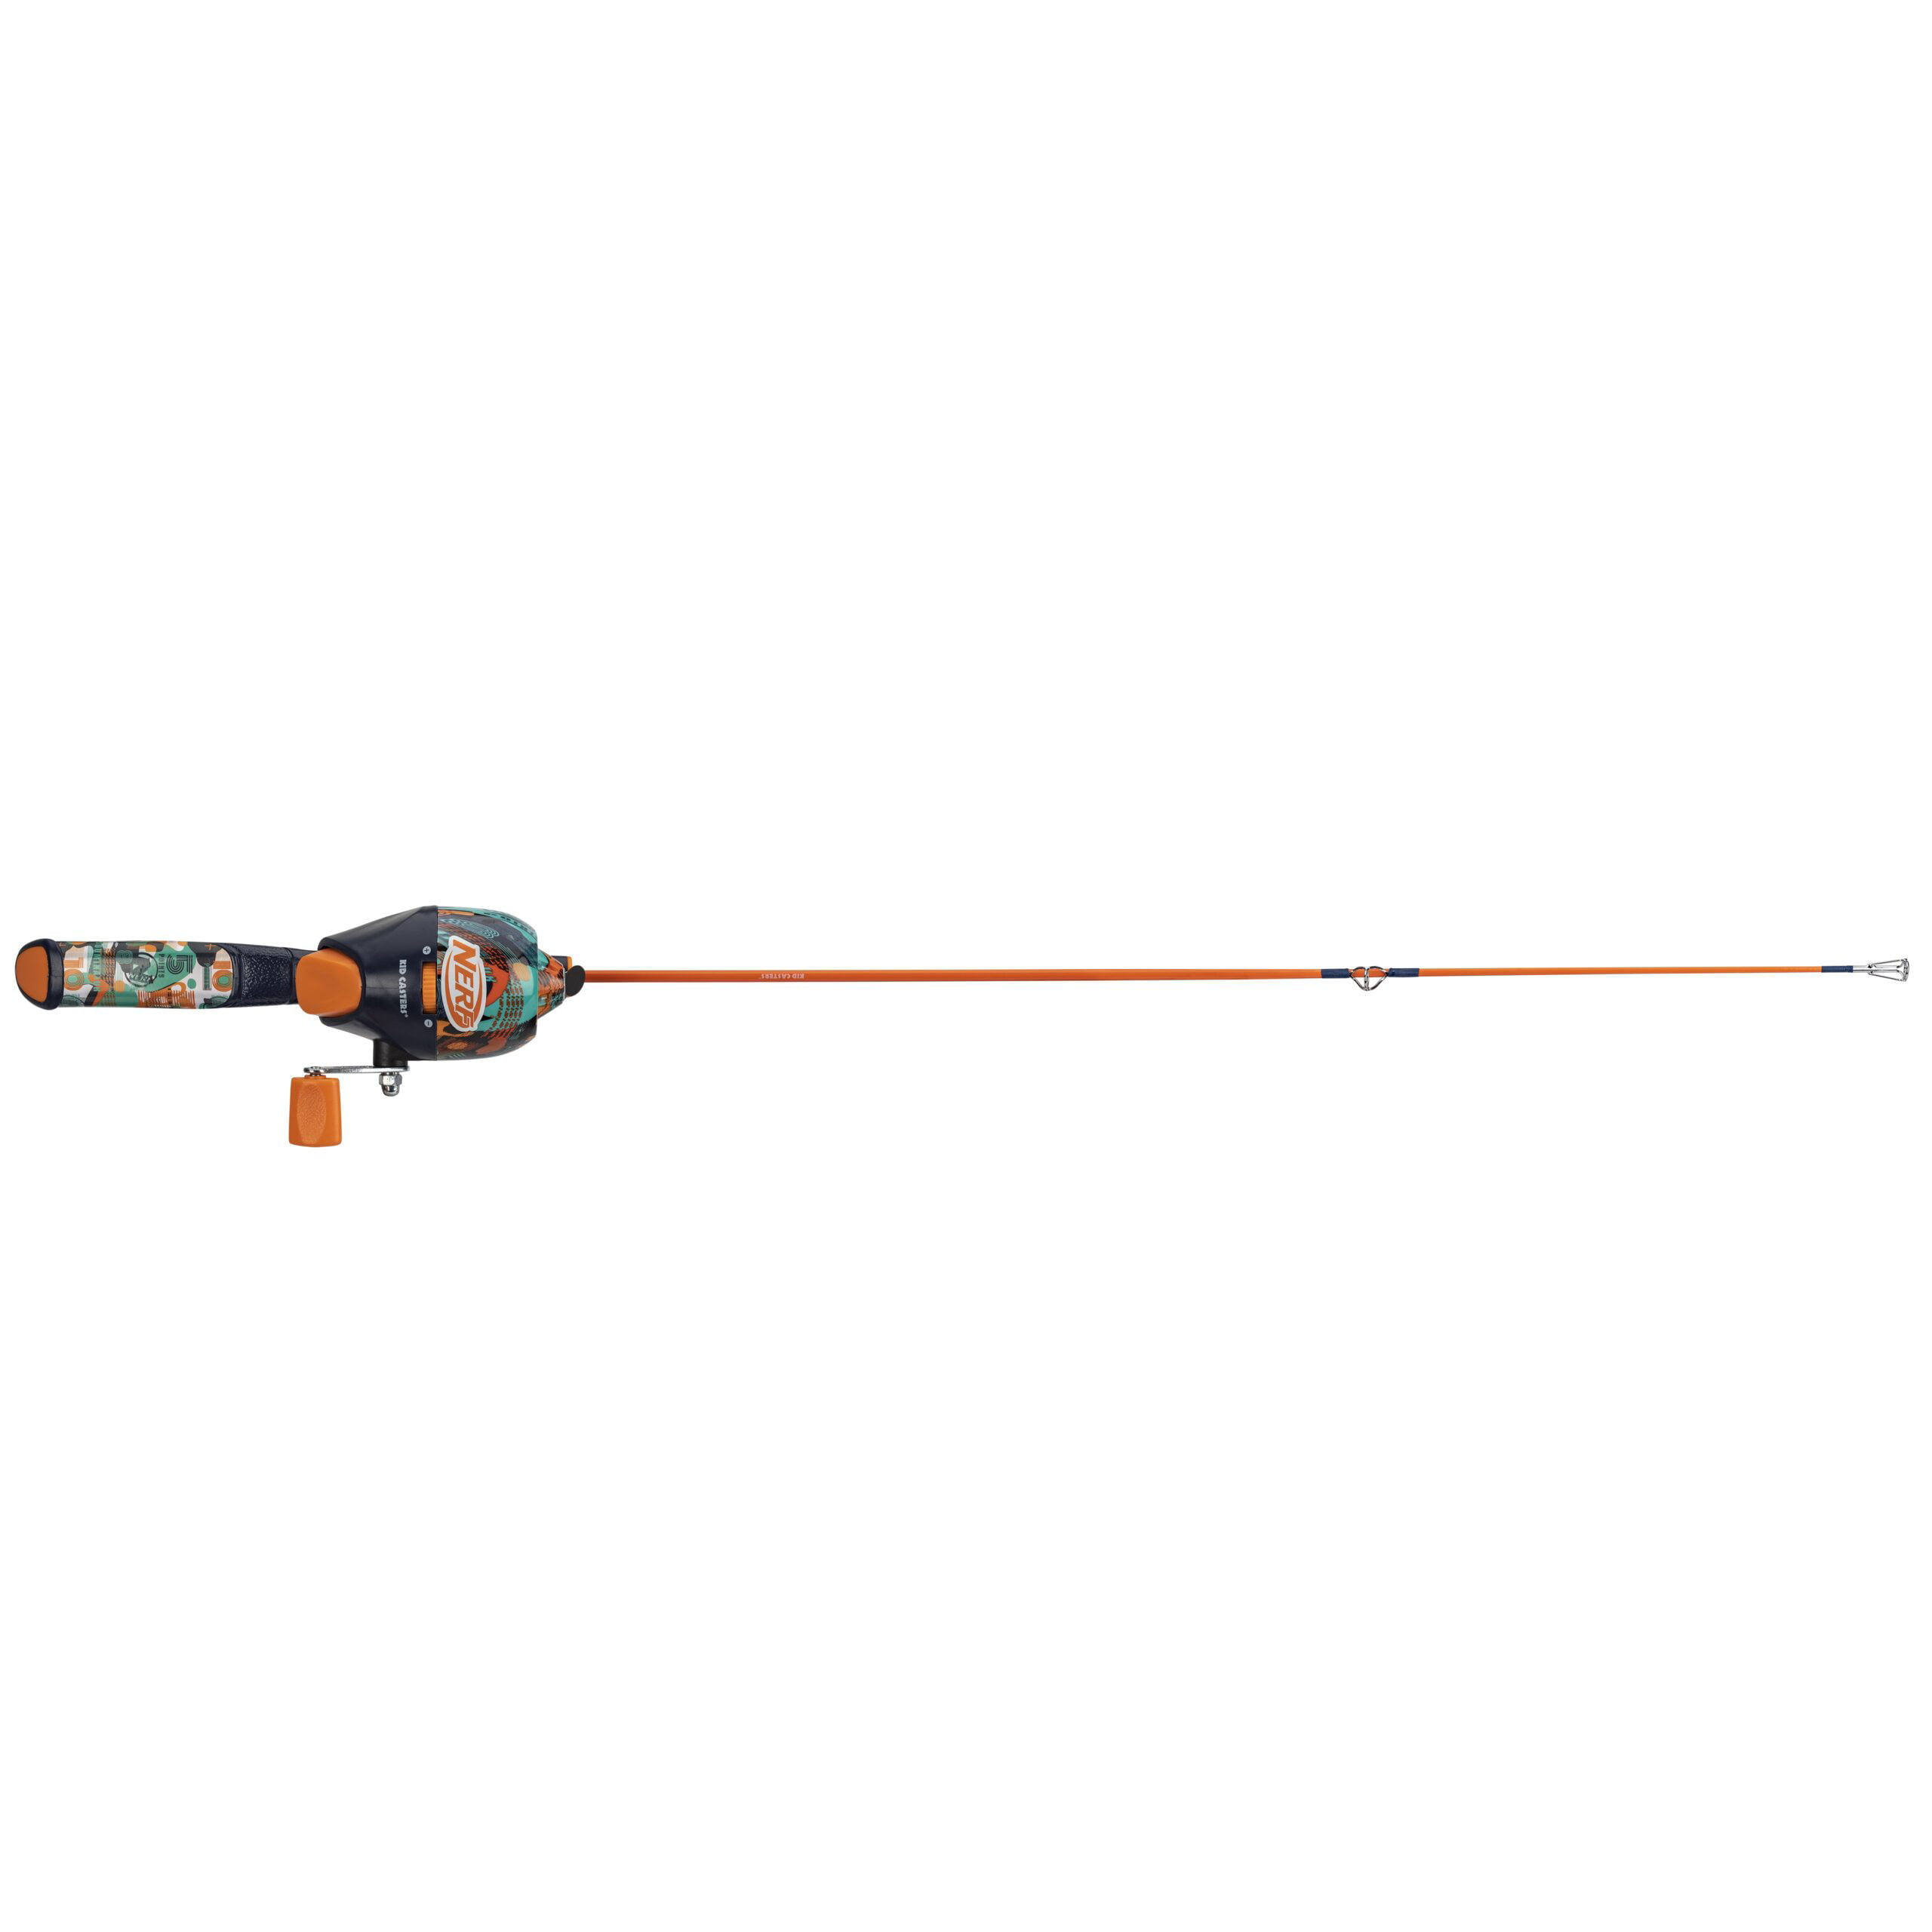 Nerf Gun Fishing Rod part 1 